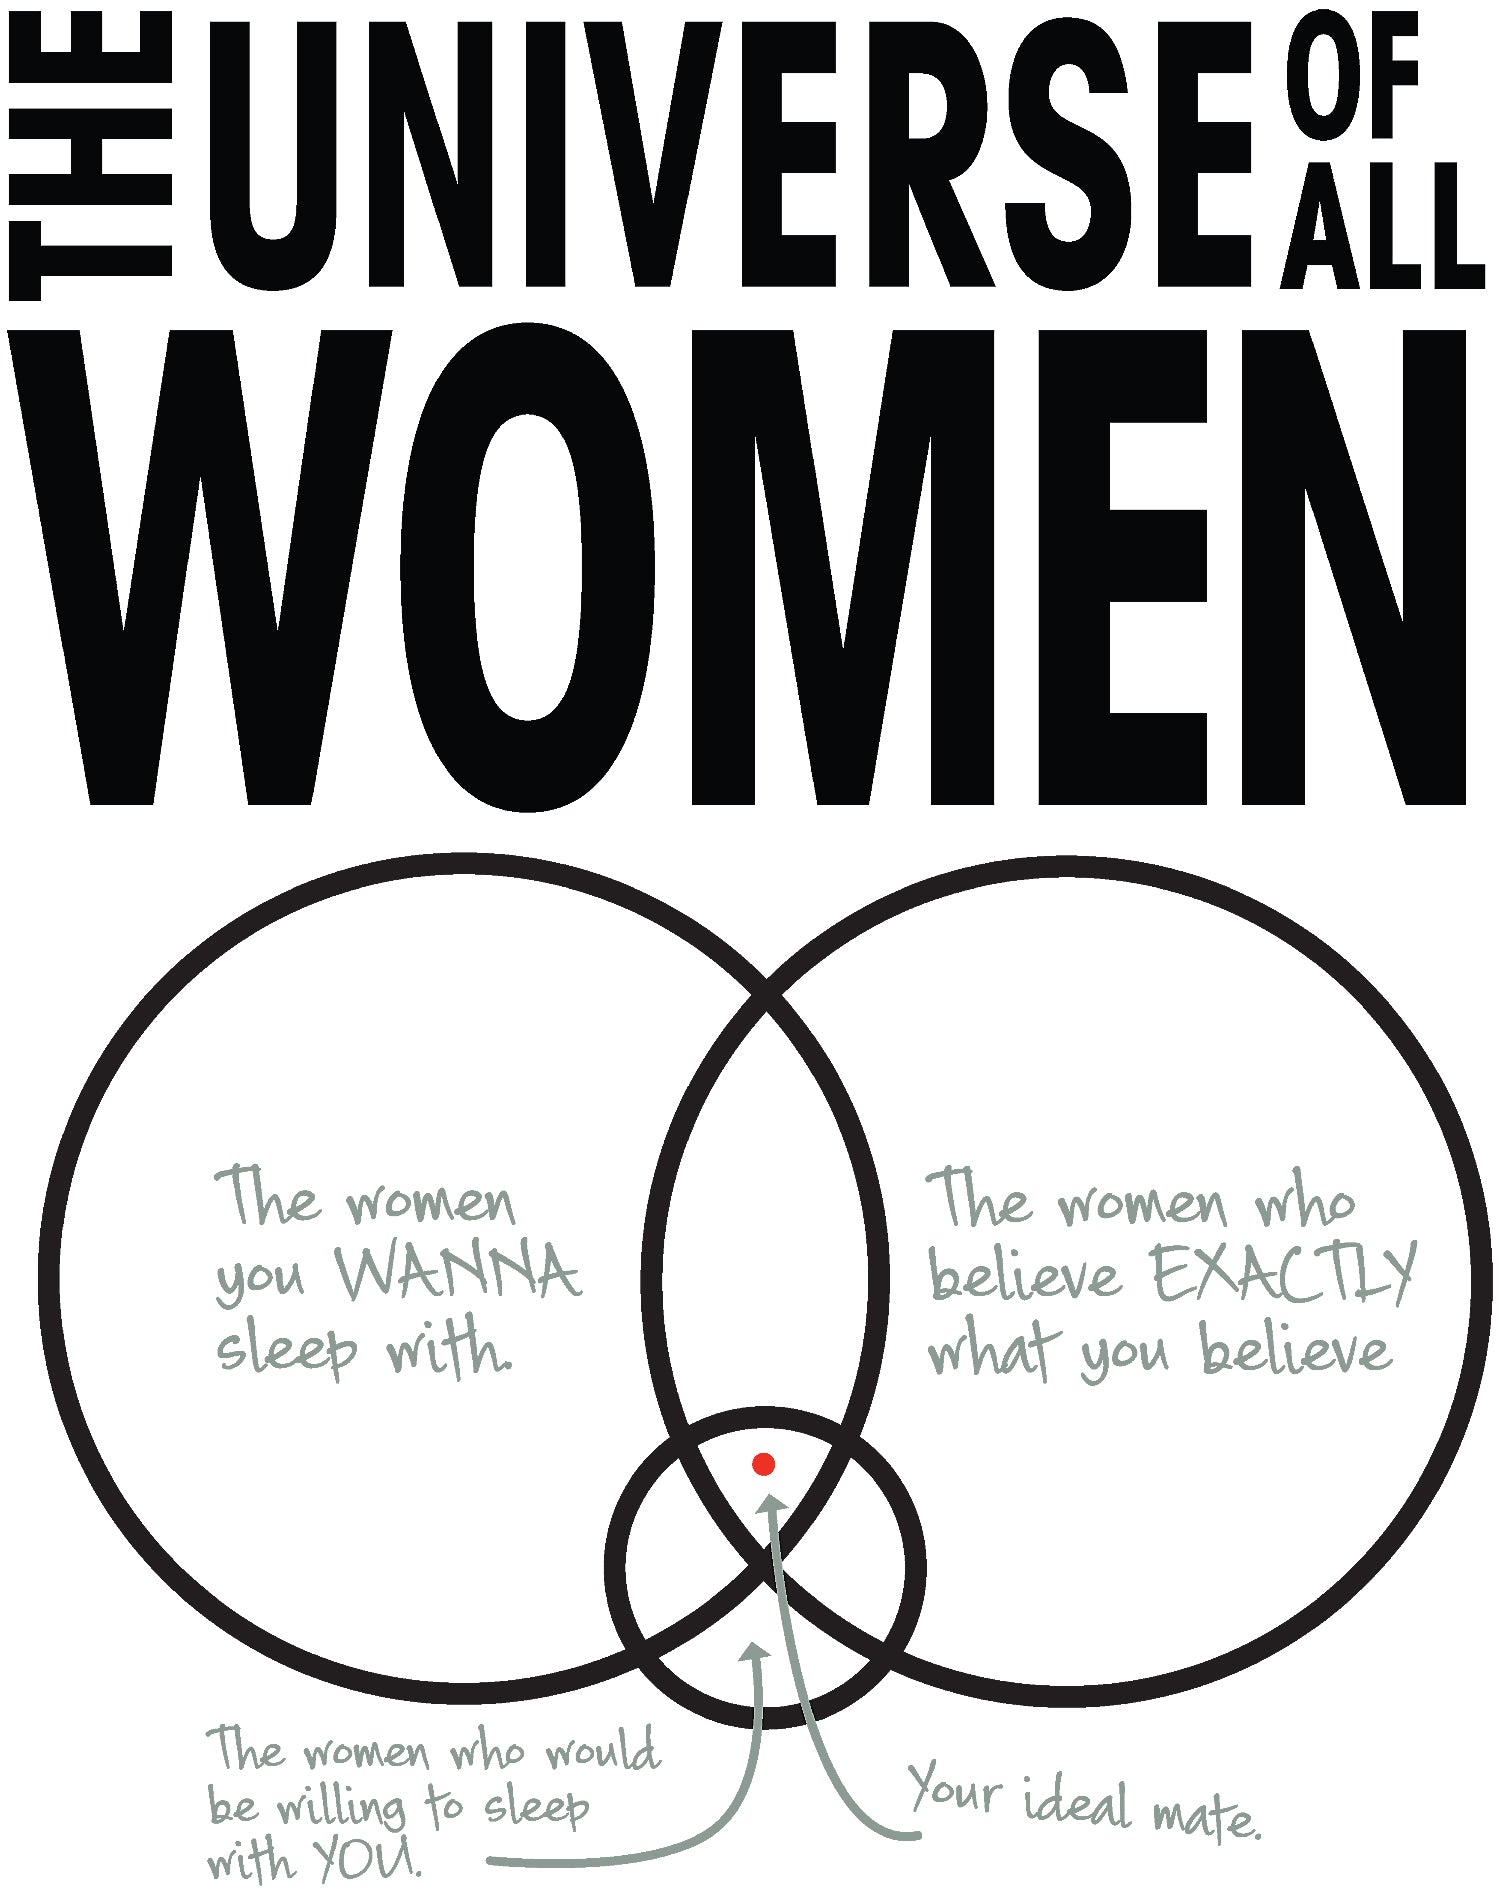 Big Bang Theory Graphic Women Universe Official Women's T-shirt